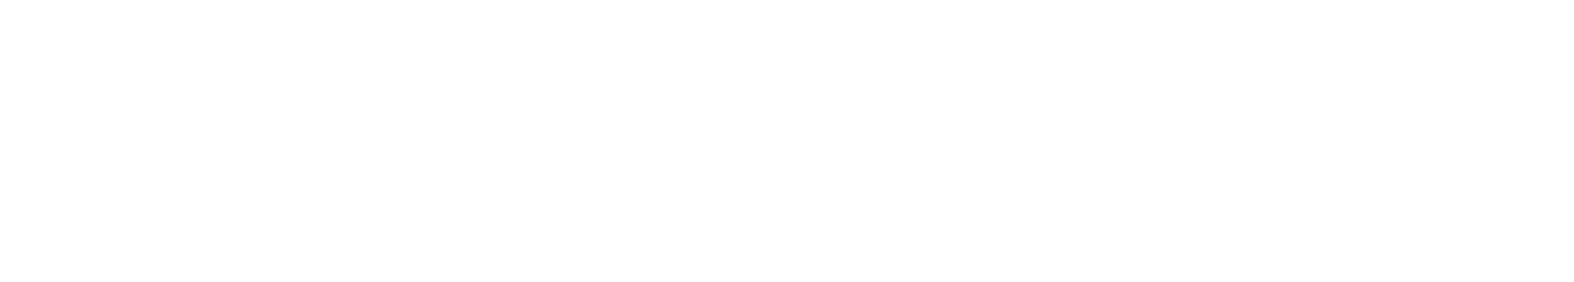 LiveWire Group logo large for dark backgrounds (transparent PNG)